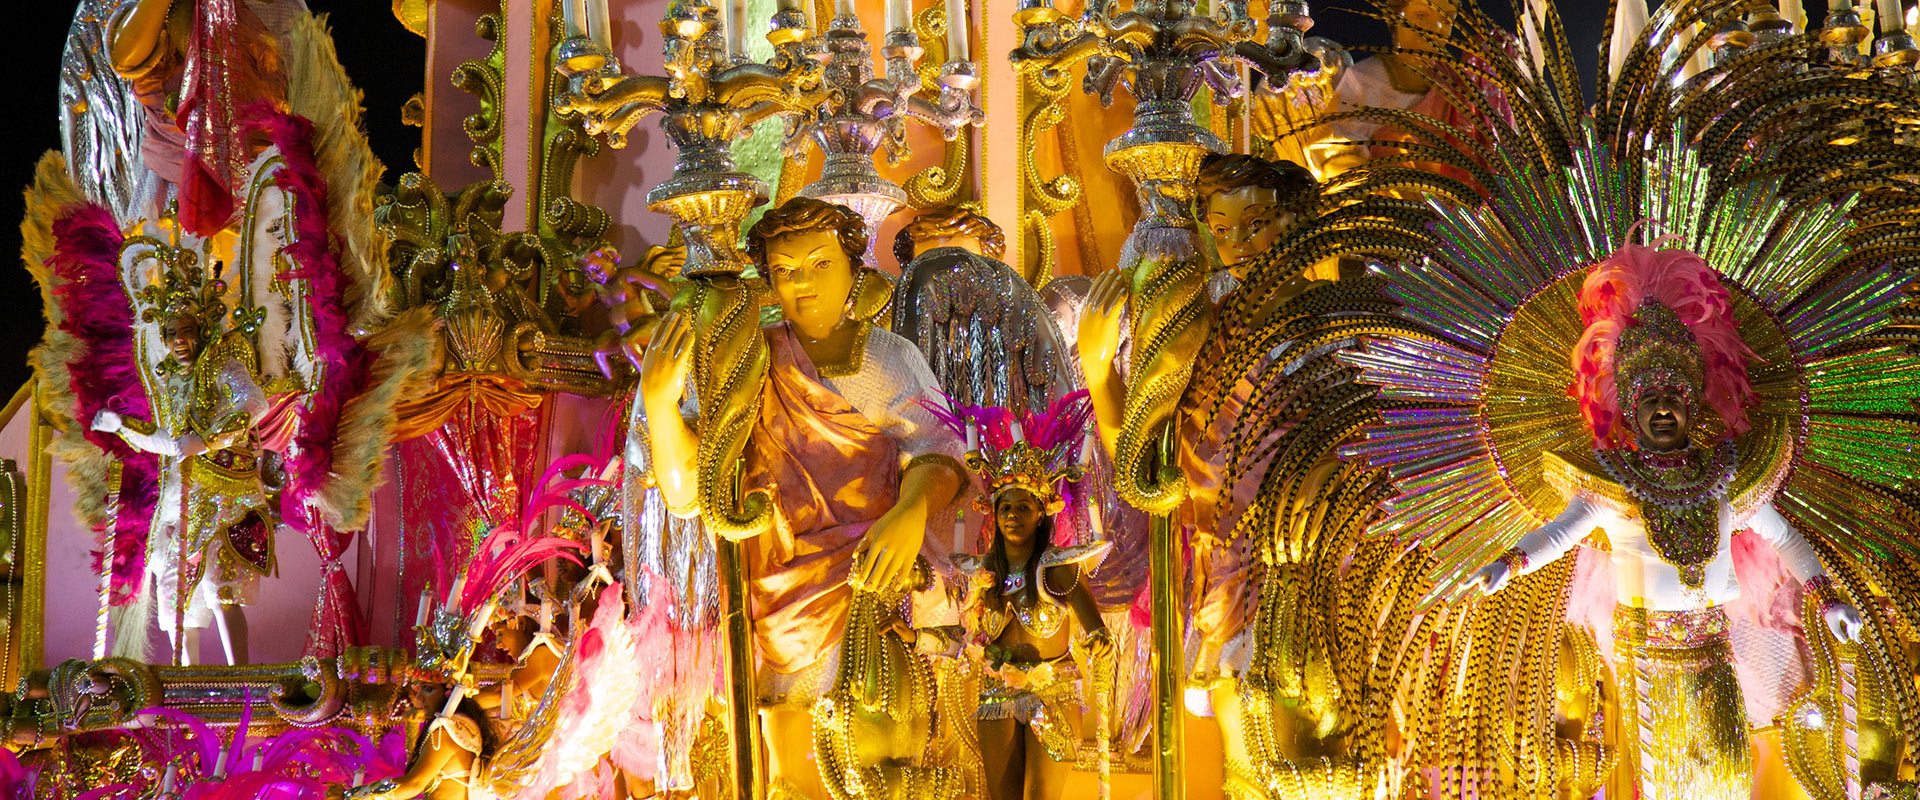 carnaval de rio bresil samba fete